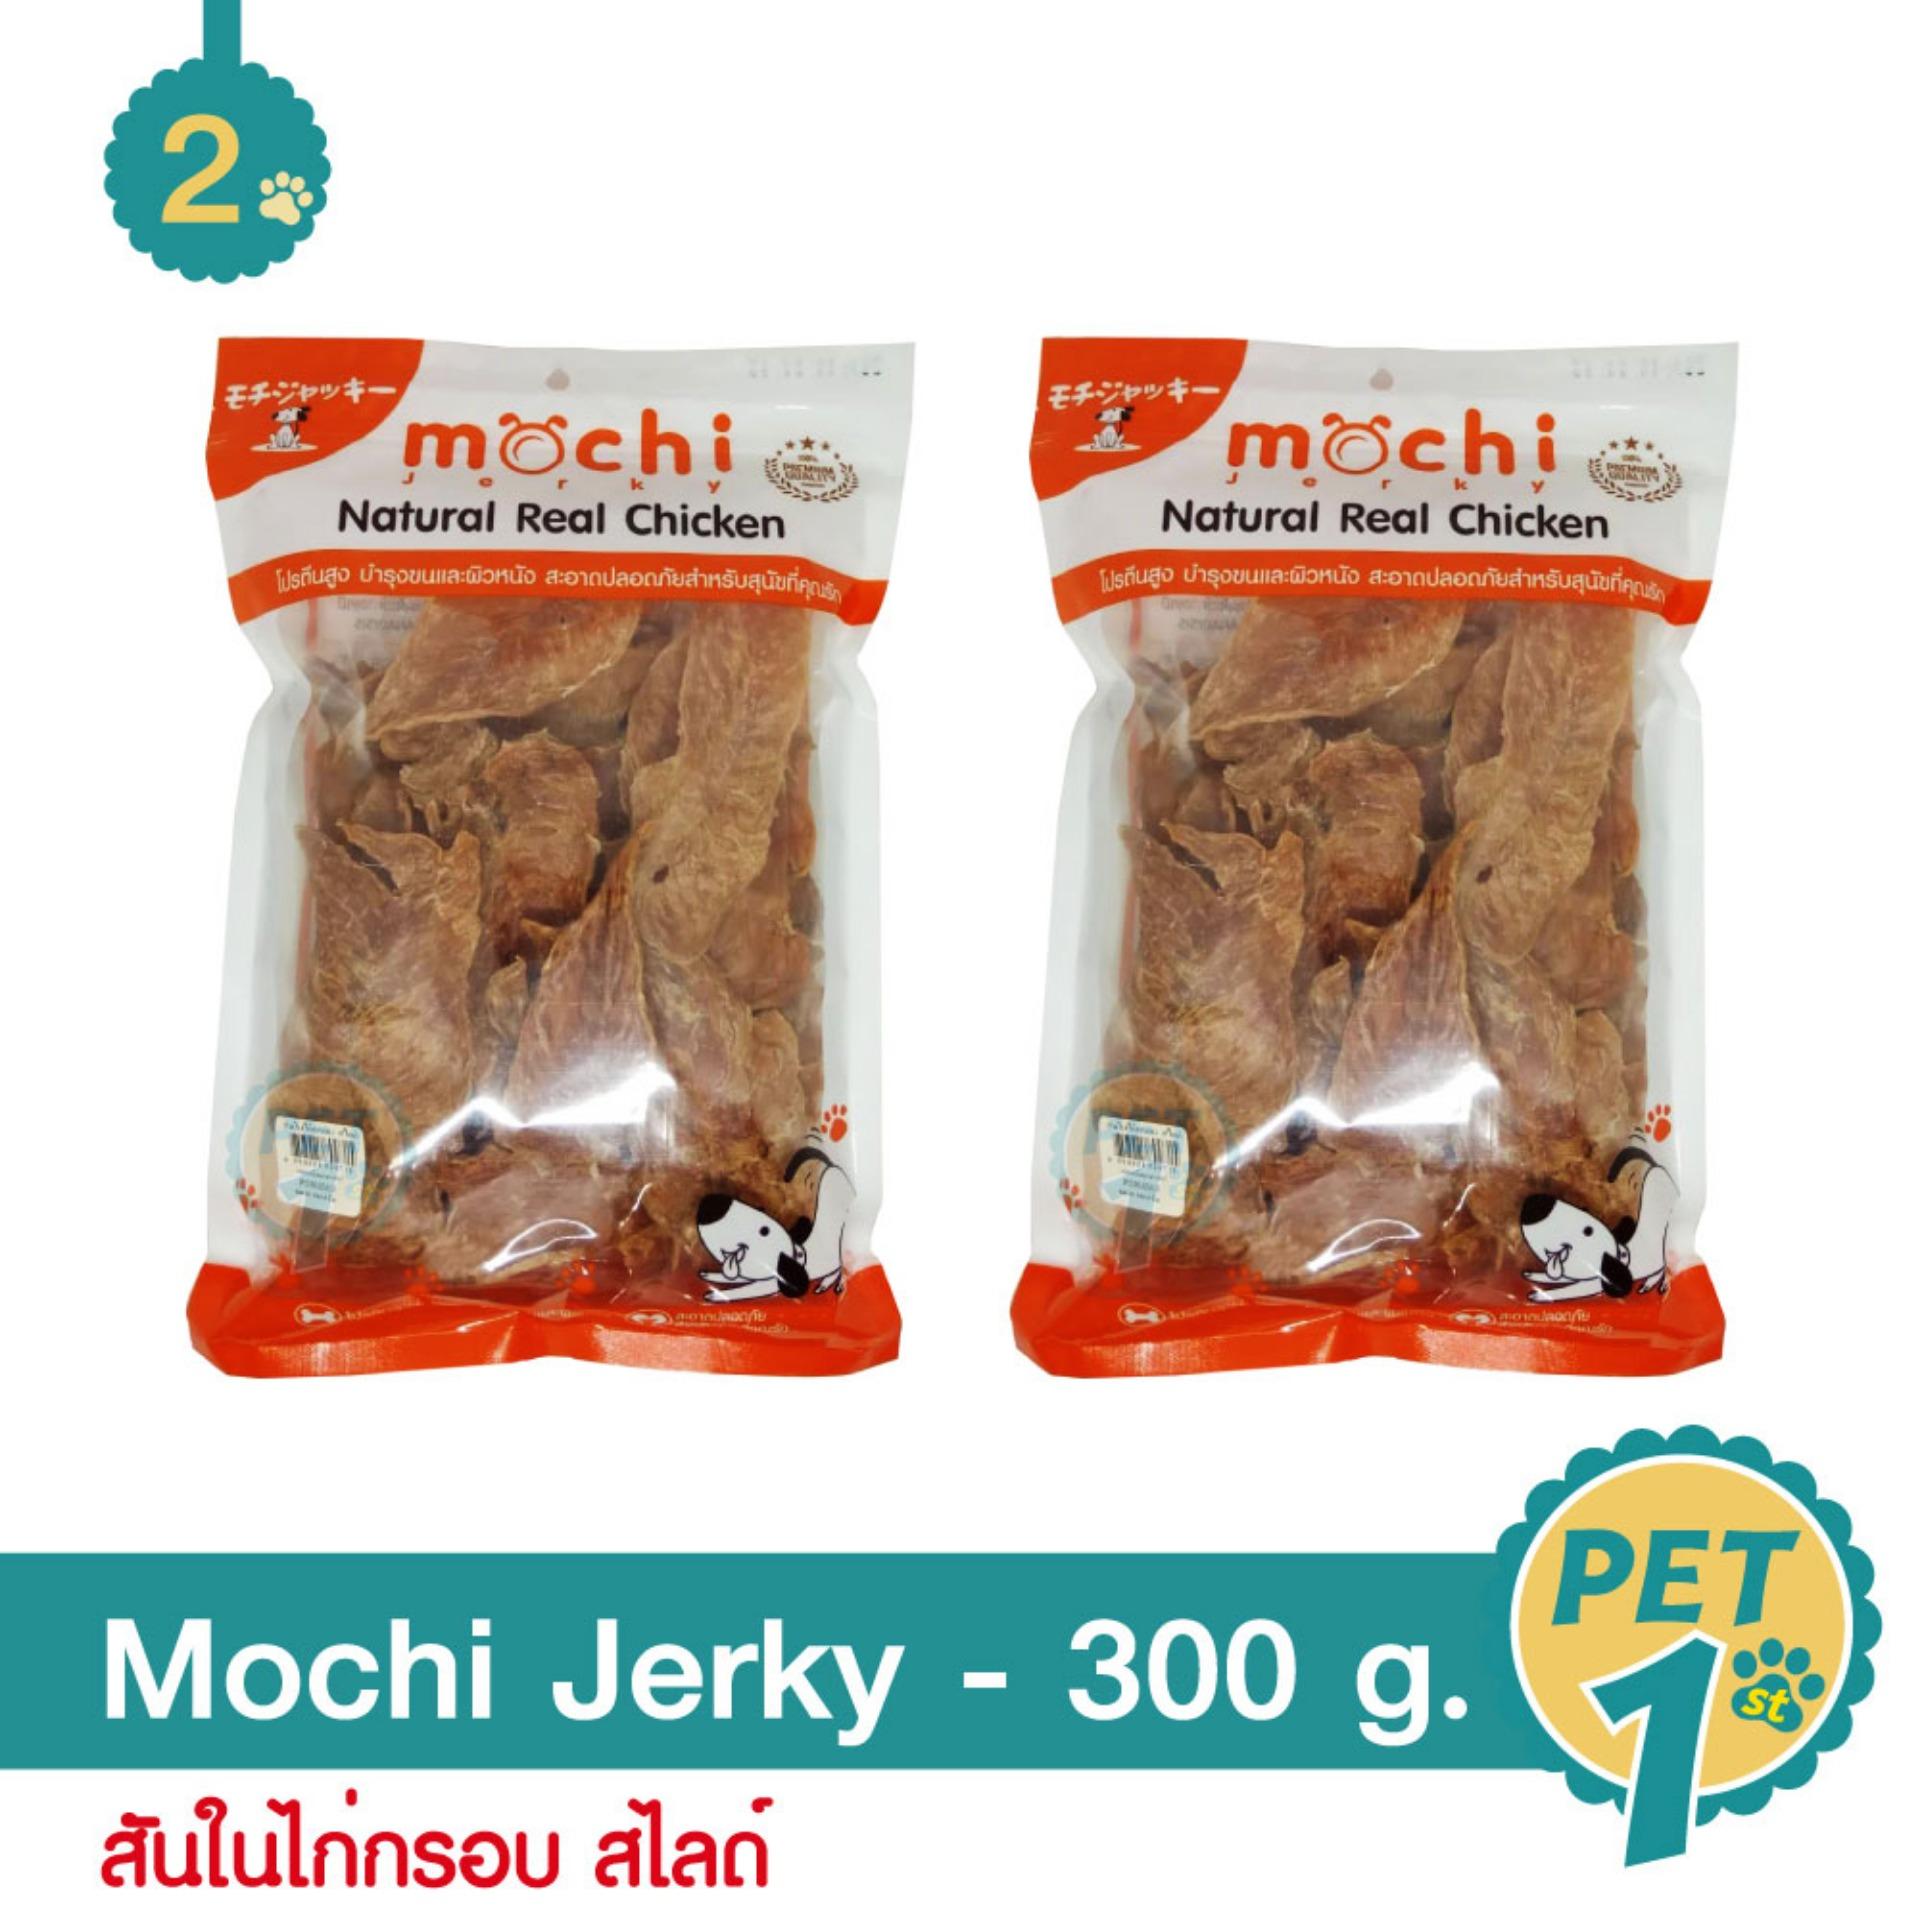 Mochi Jerky สันในไก่กรอบ สไลด์ ขนมอบแห้ง สำหรับสุนัข 300 g. - 2 แพ็ค